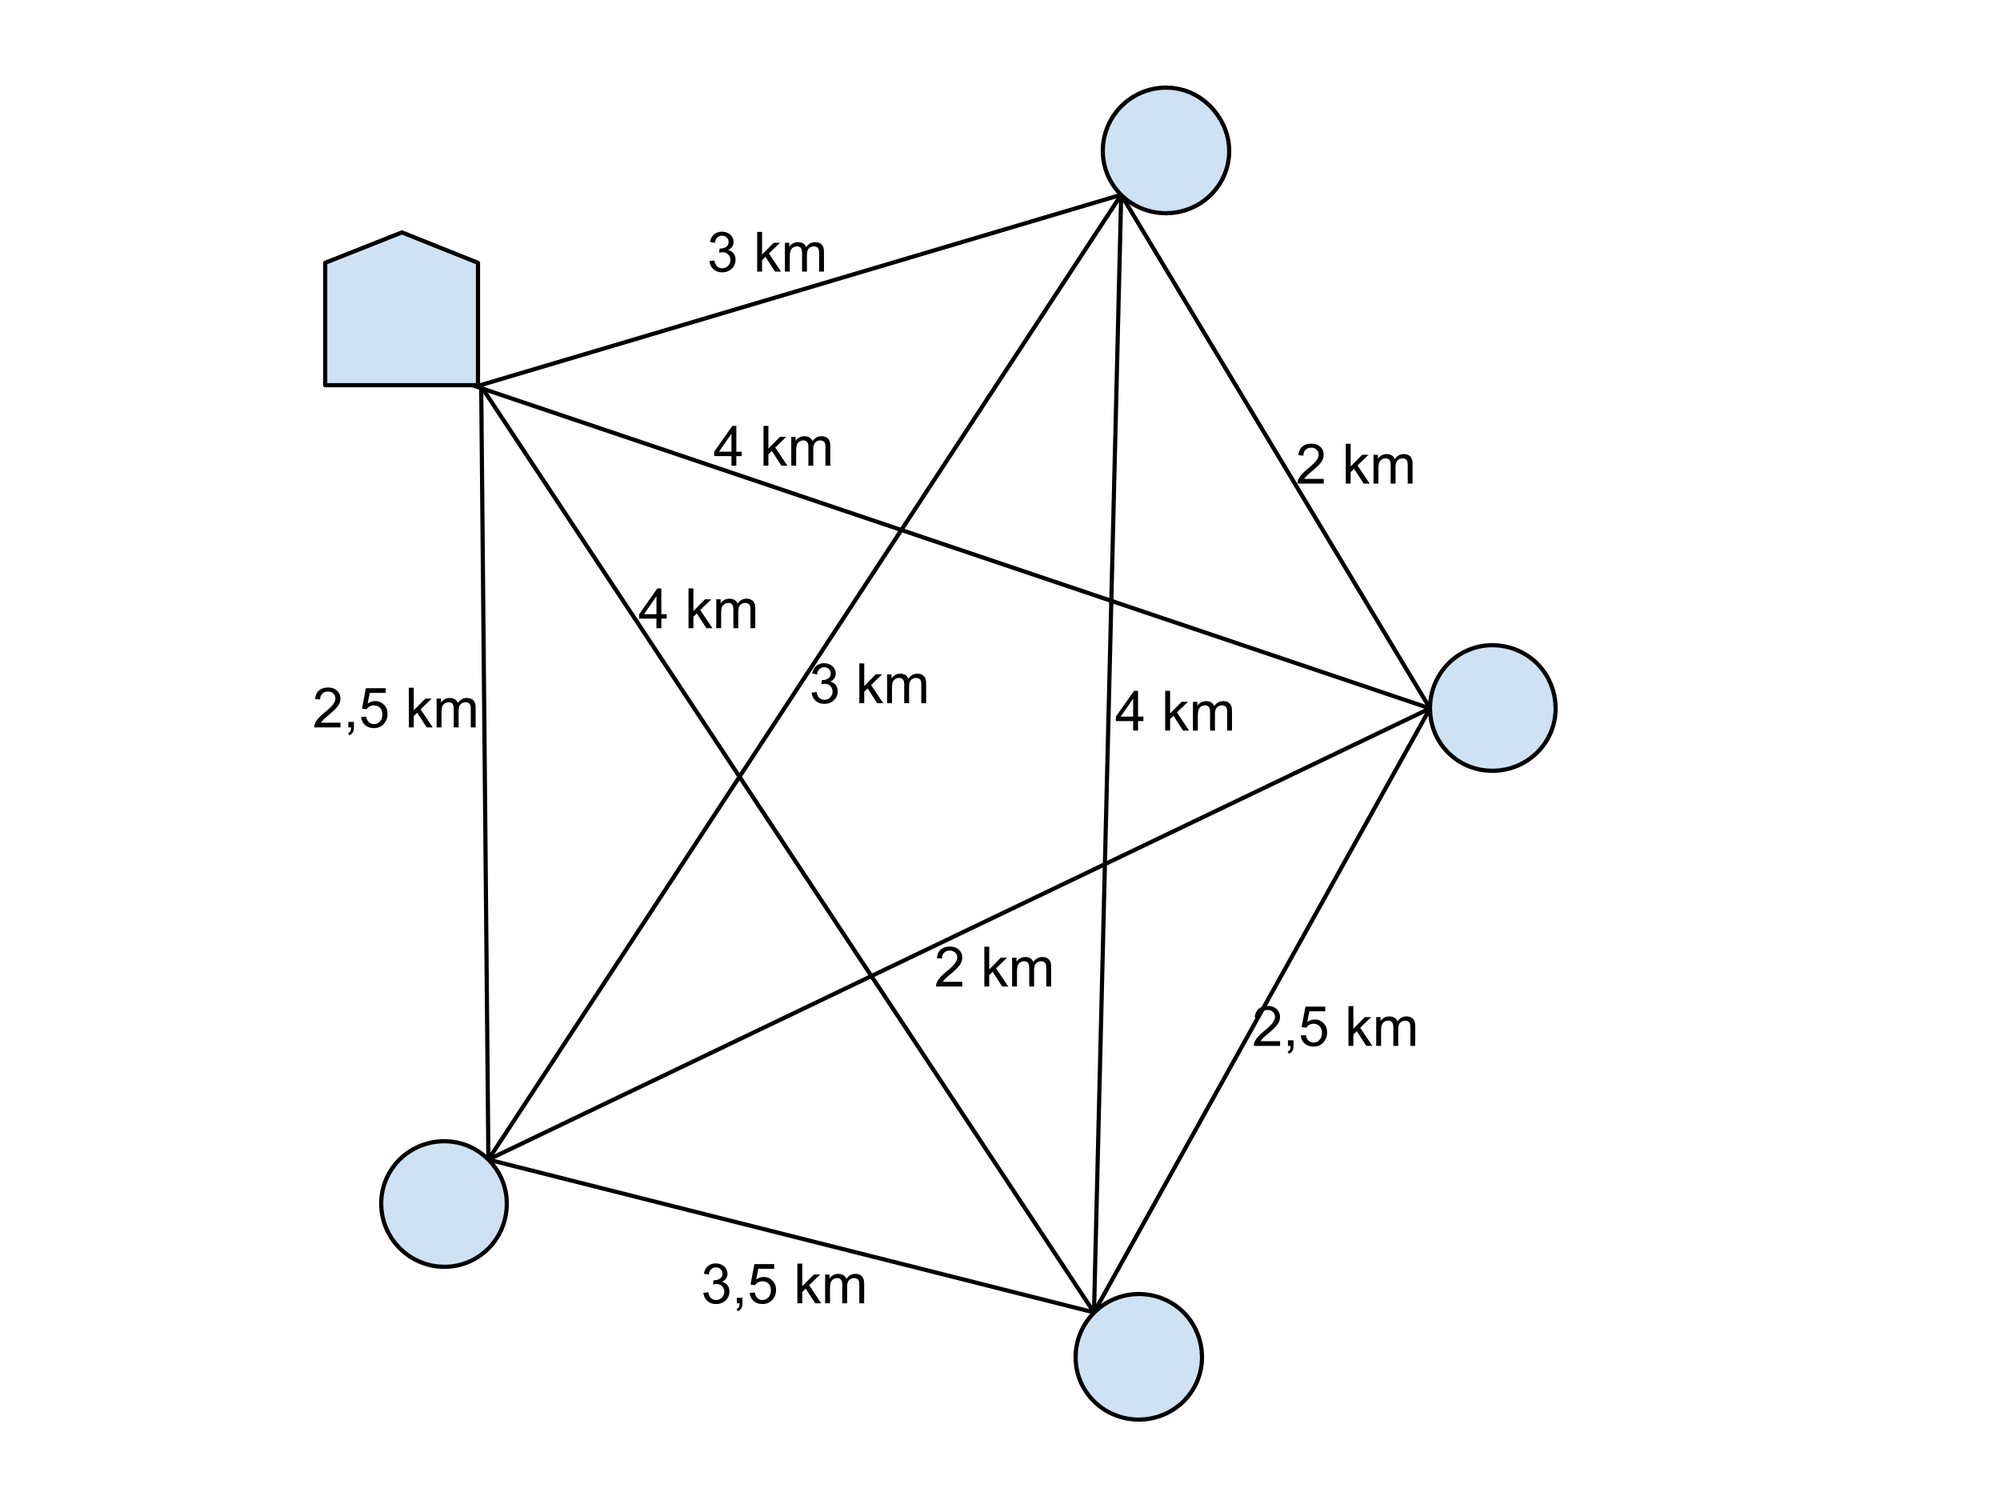 Kreisförmig angeordnete Punkte mit paarweisen Längenangaben